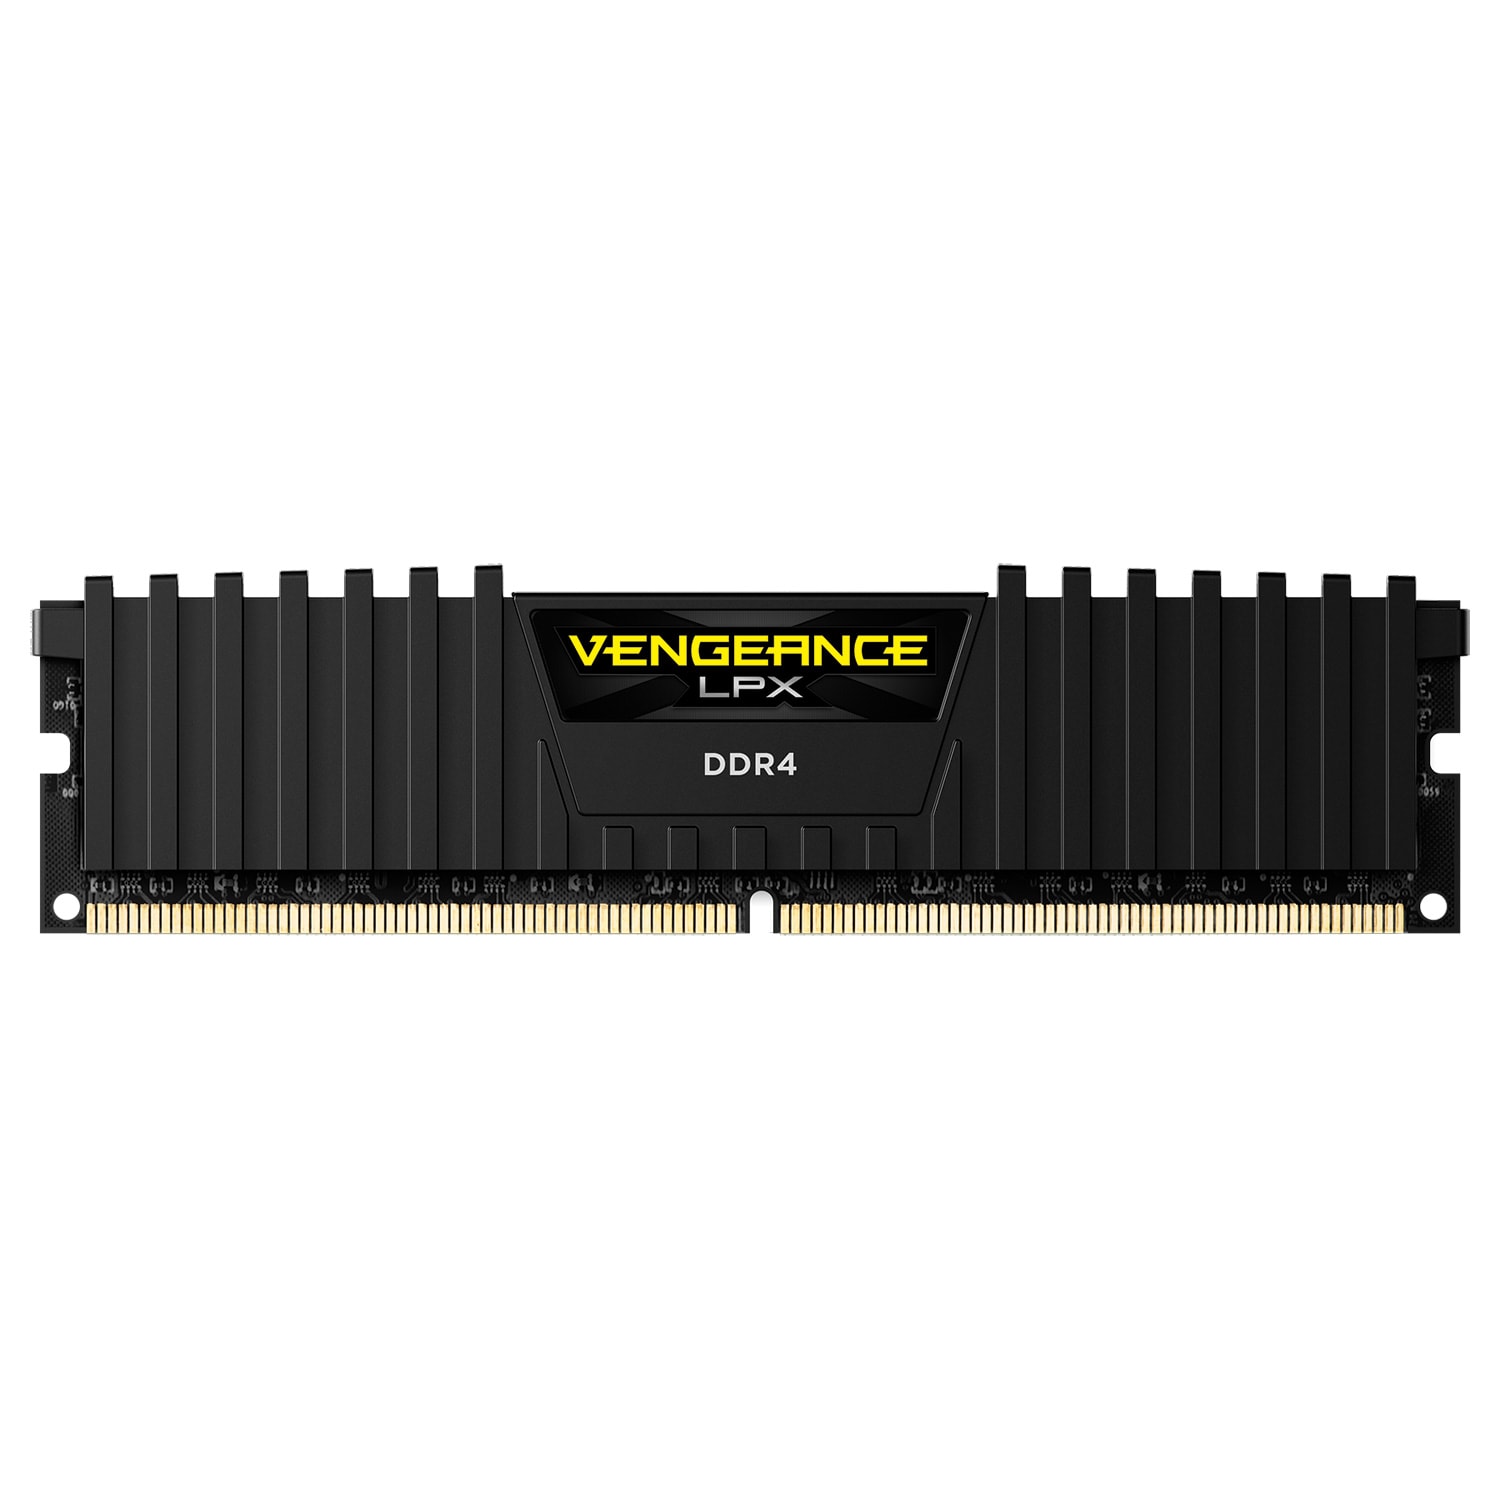 Barrette mémoire RAM DDR3 16 Go (Kit 2x8Go) Kingston Value PC12800